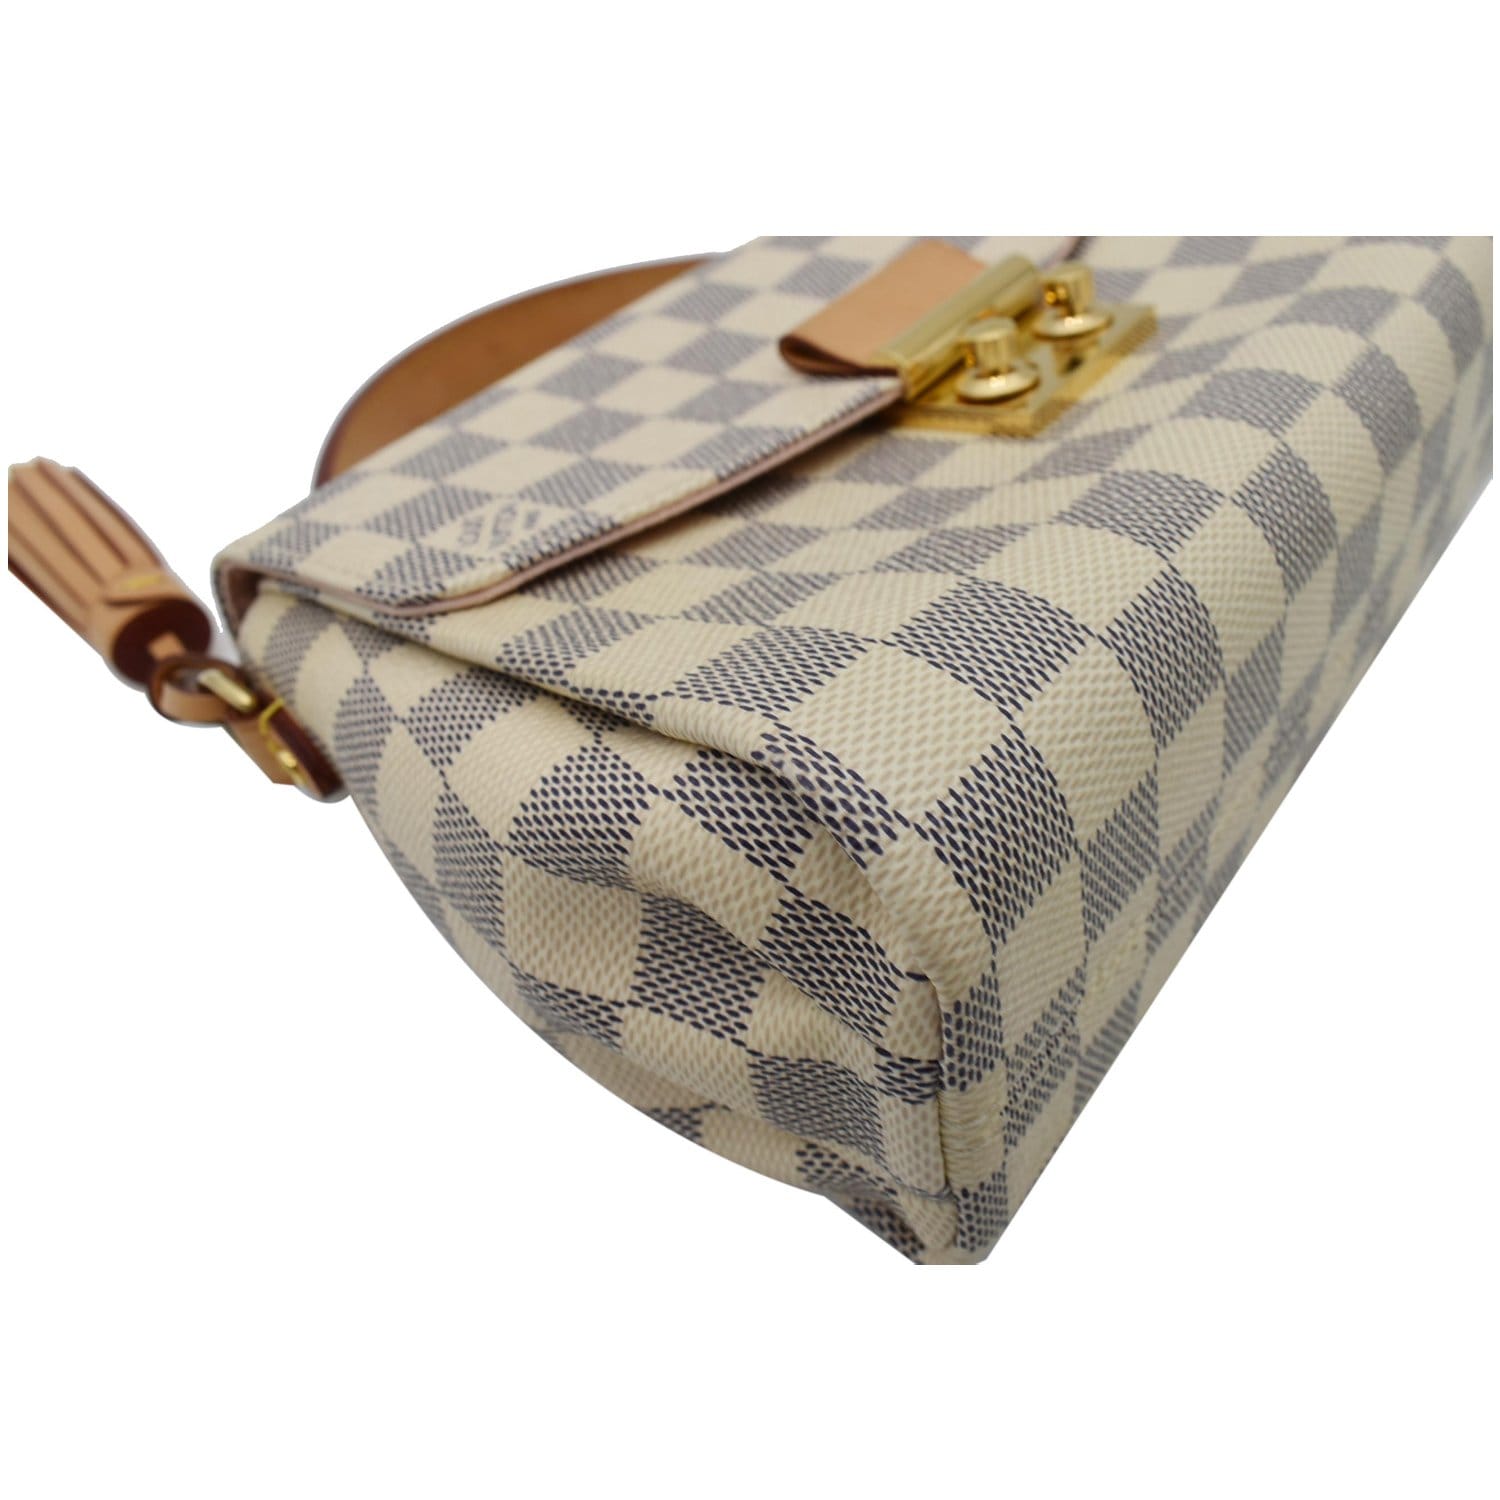 Louis Vuitton Croisette Damier Azur Shoulder Crossbody Bag